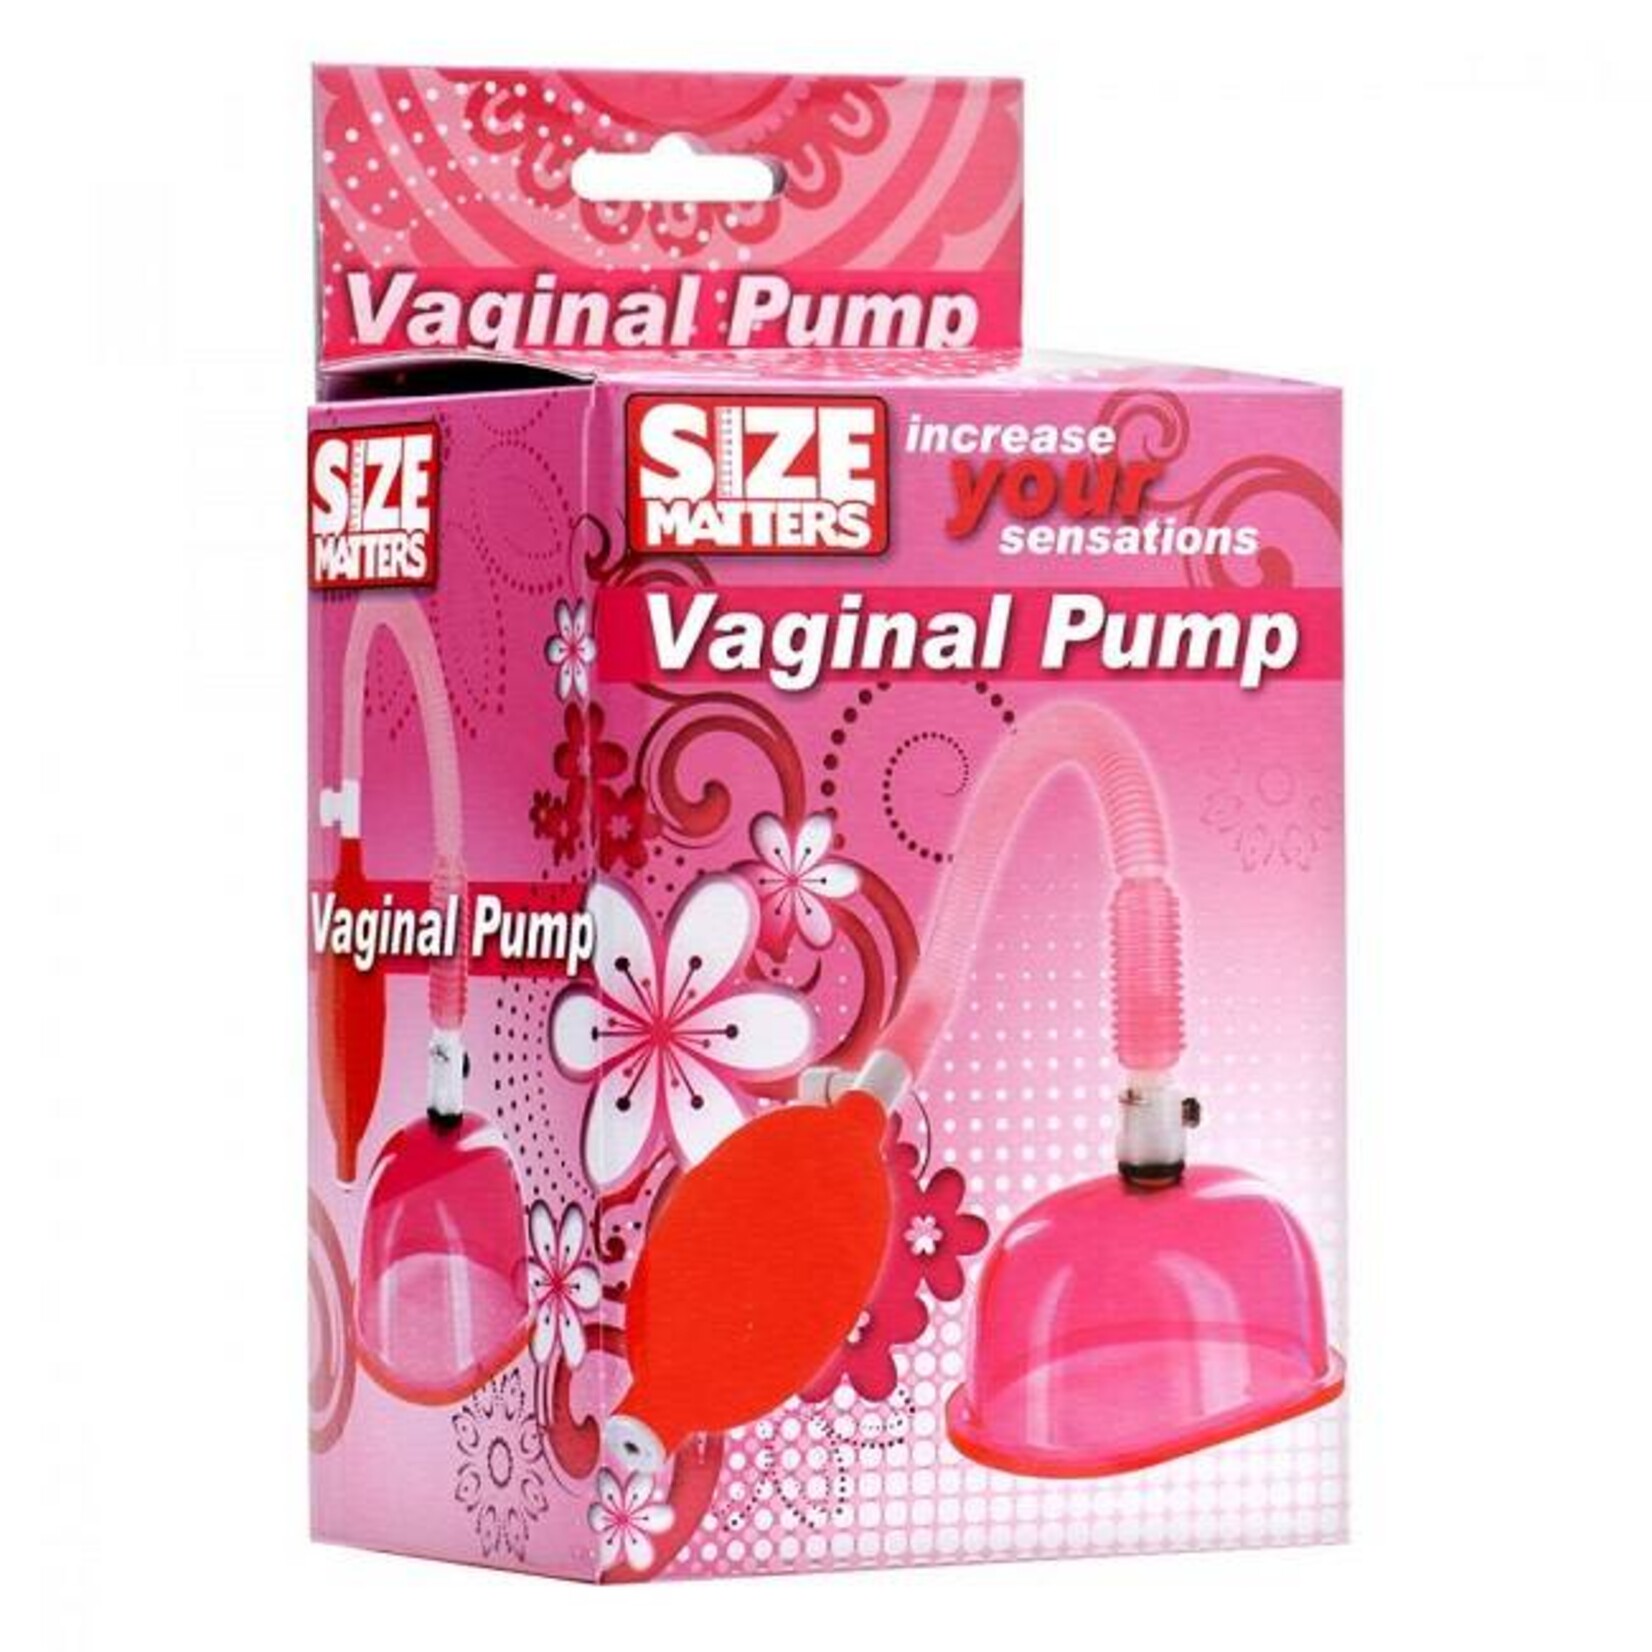 Size Matters Size Matters Vaginal Pump